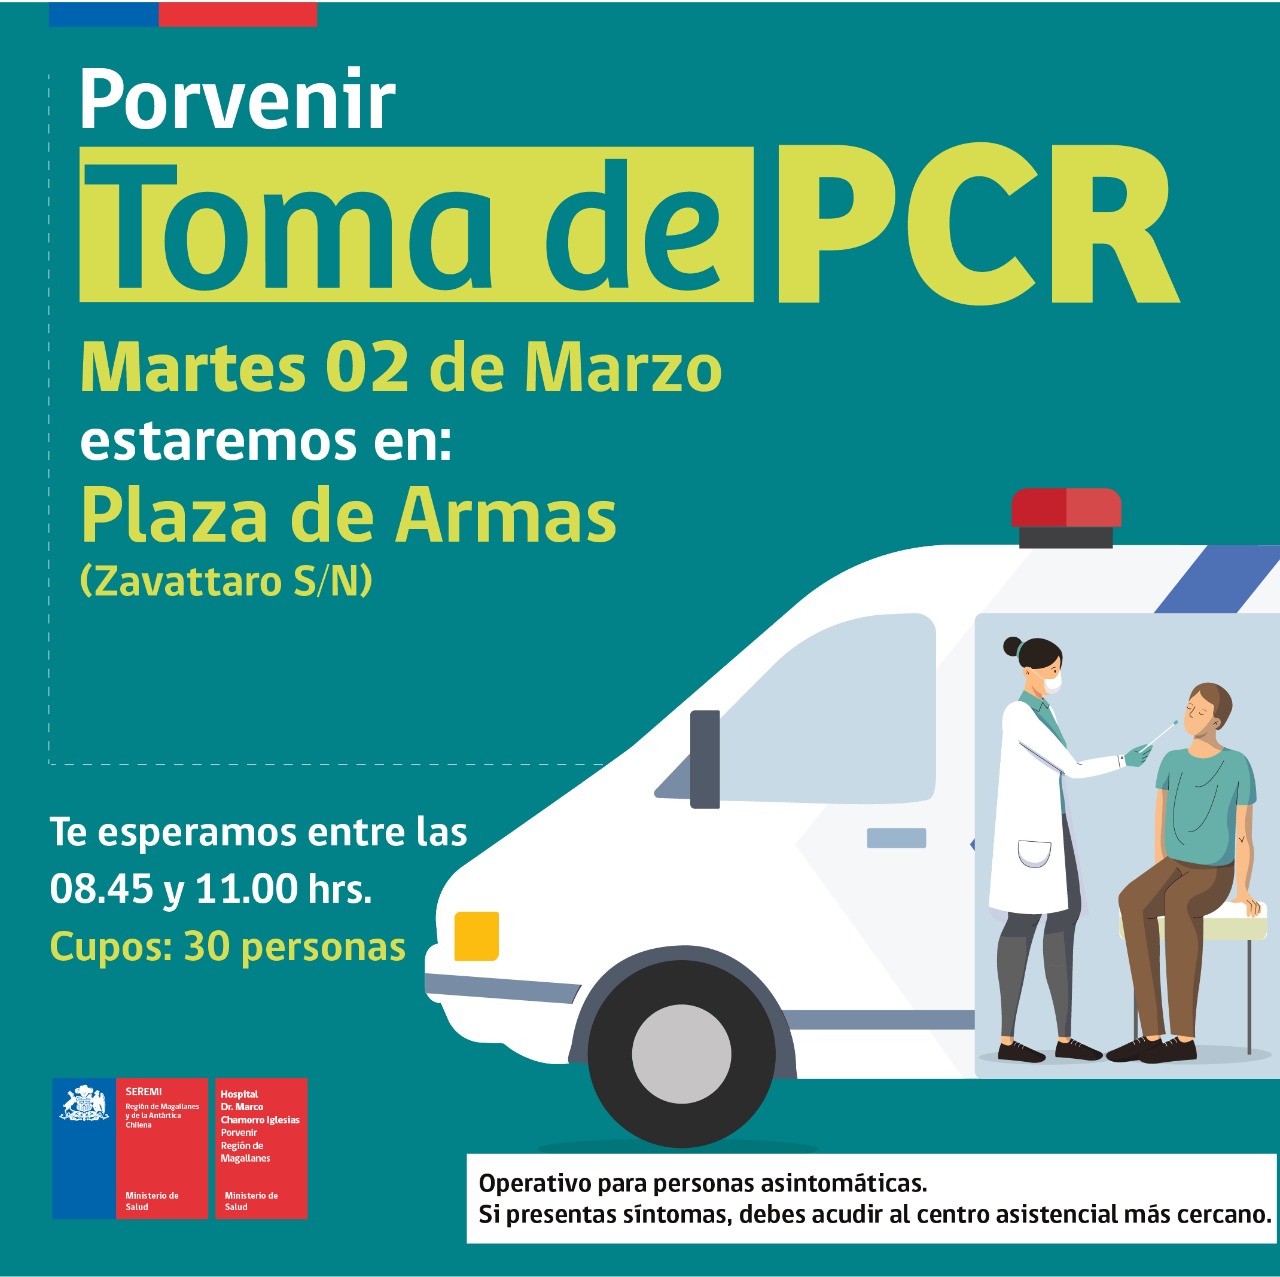 Toma de PCR se realizará este martes 2 de marzo en Punta Arenas, Natales, Porvenir y Puerto Williams